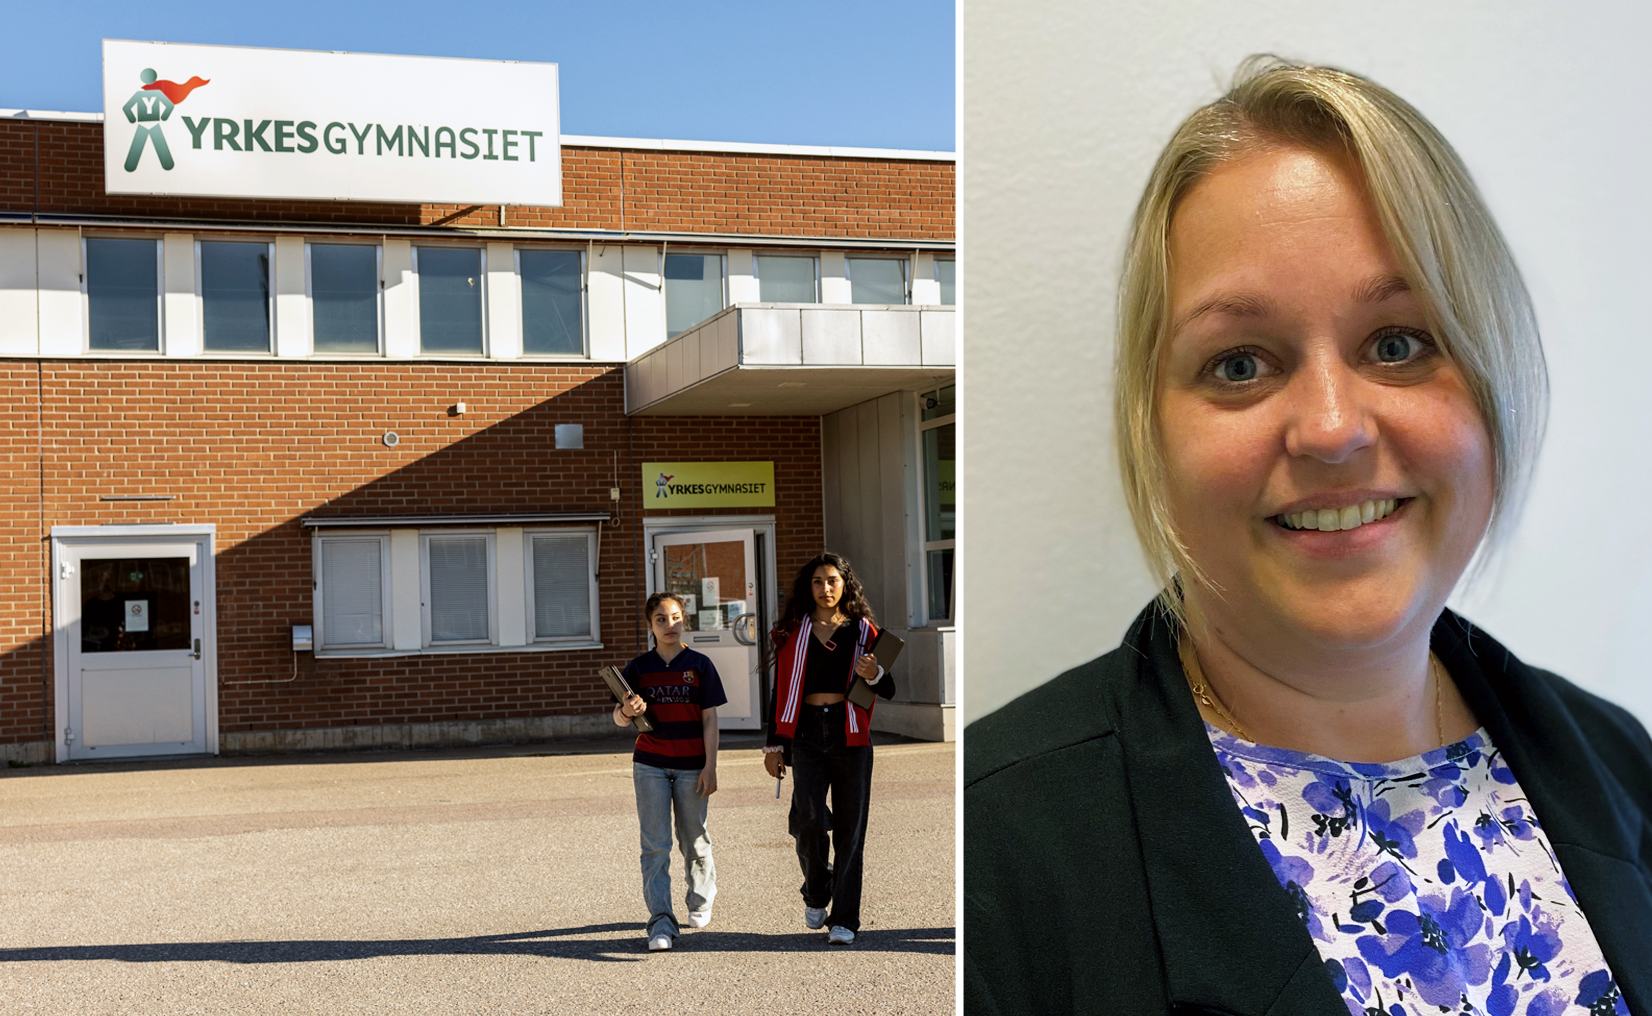 Featured image for “100 % av eleverna på Yrkesgymnasiet i Örebro tar examen: ”Lärarna ger aldrig upp””